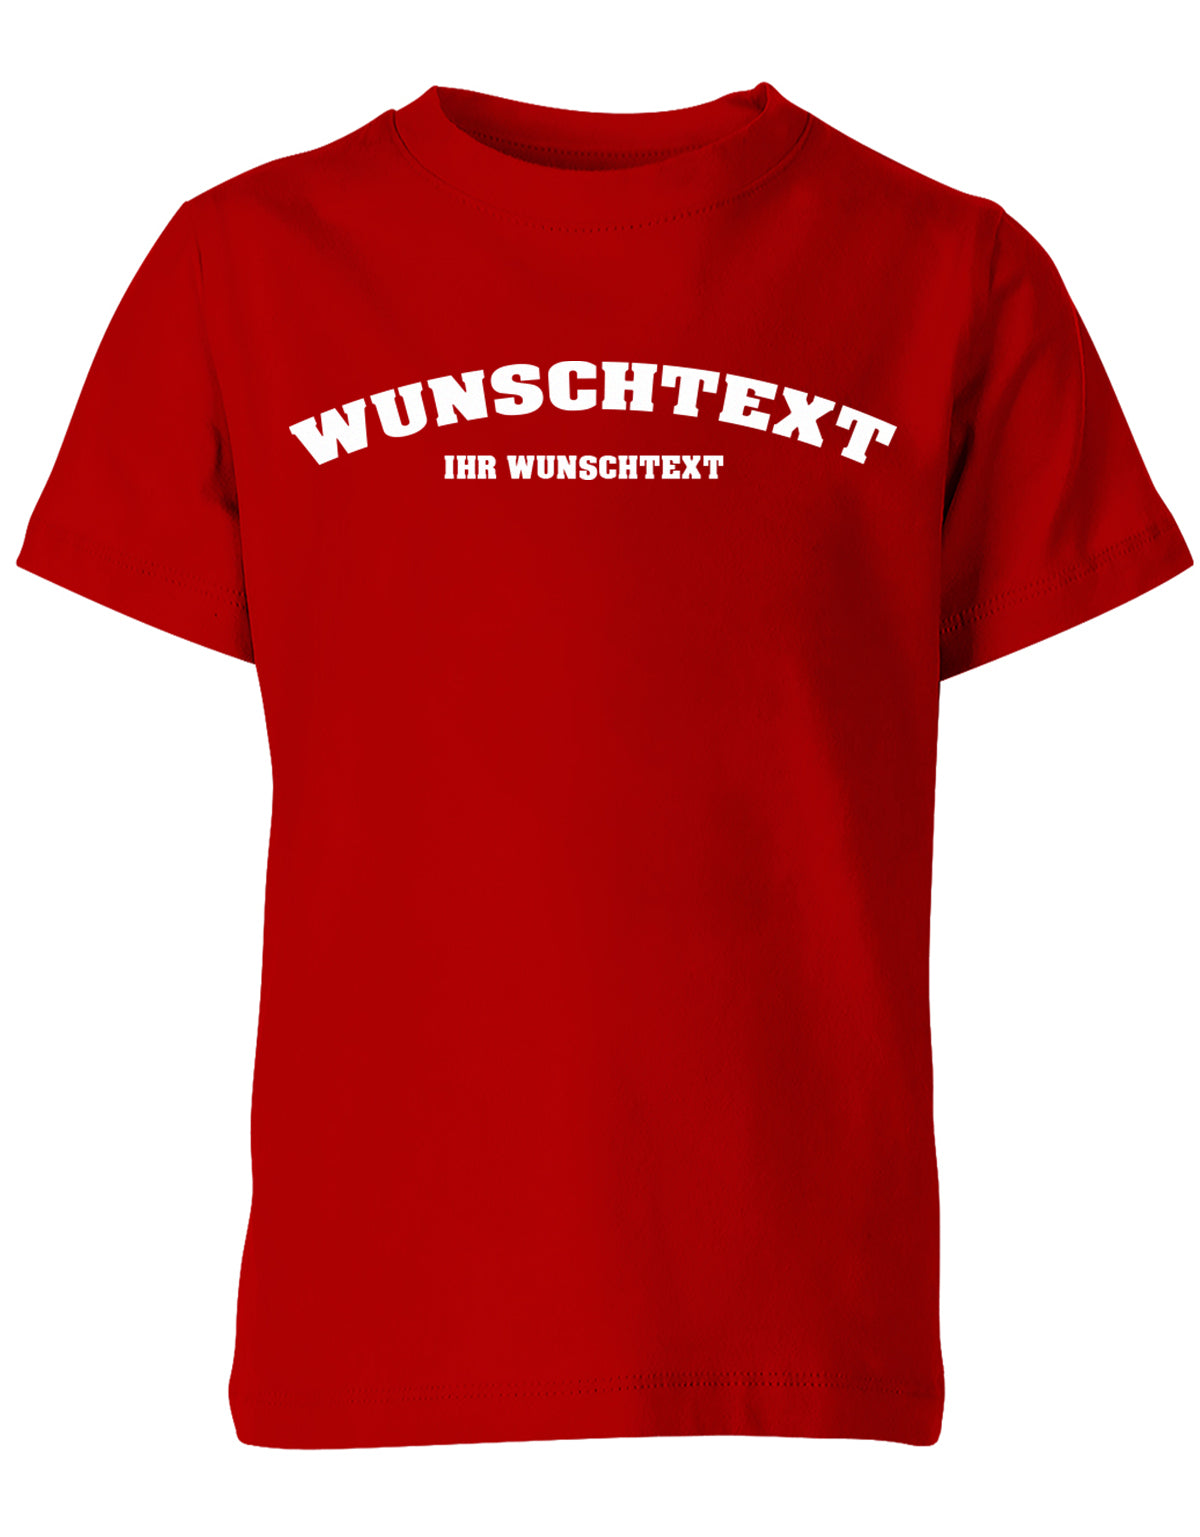 Kinder Tshirt mit Wunschtext.  Abgerundeter Text im Collage-Style. Rot